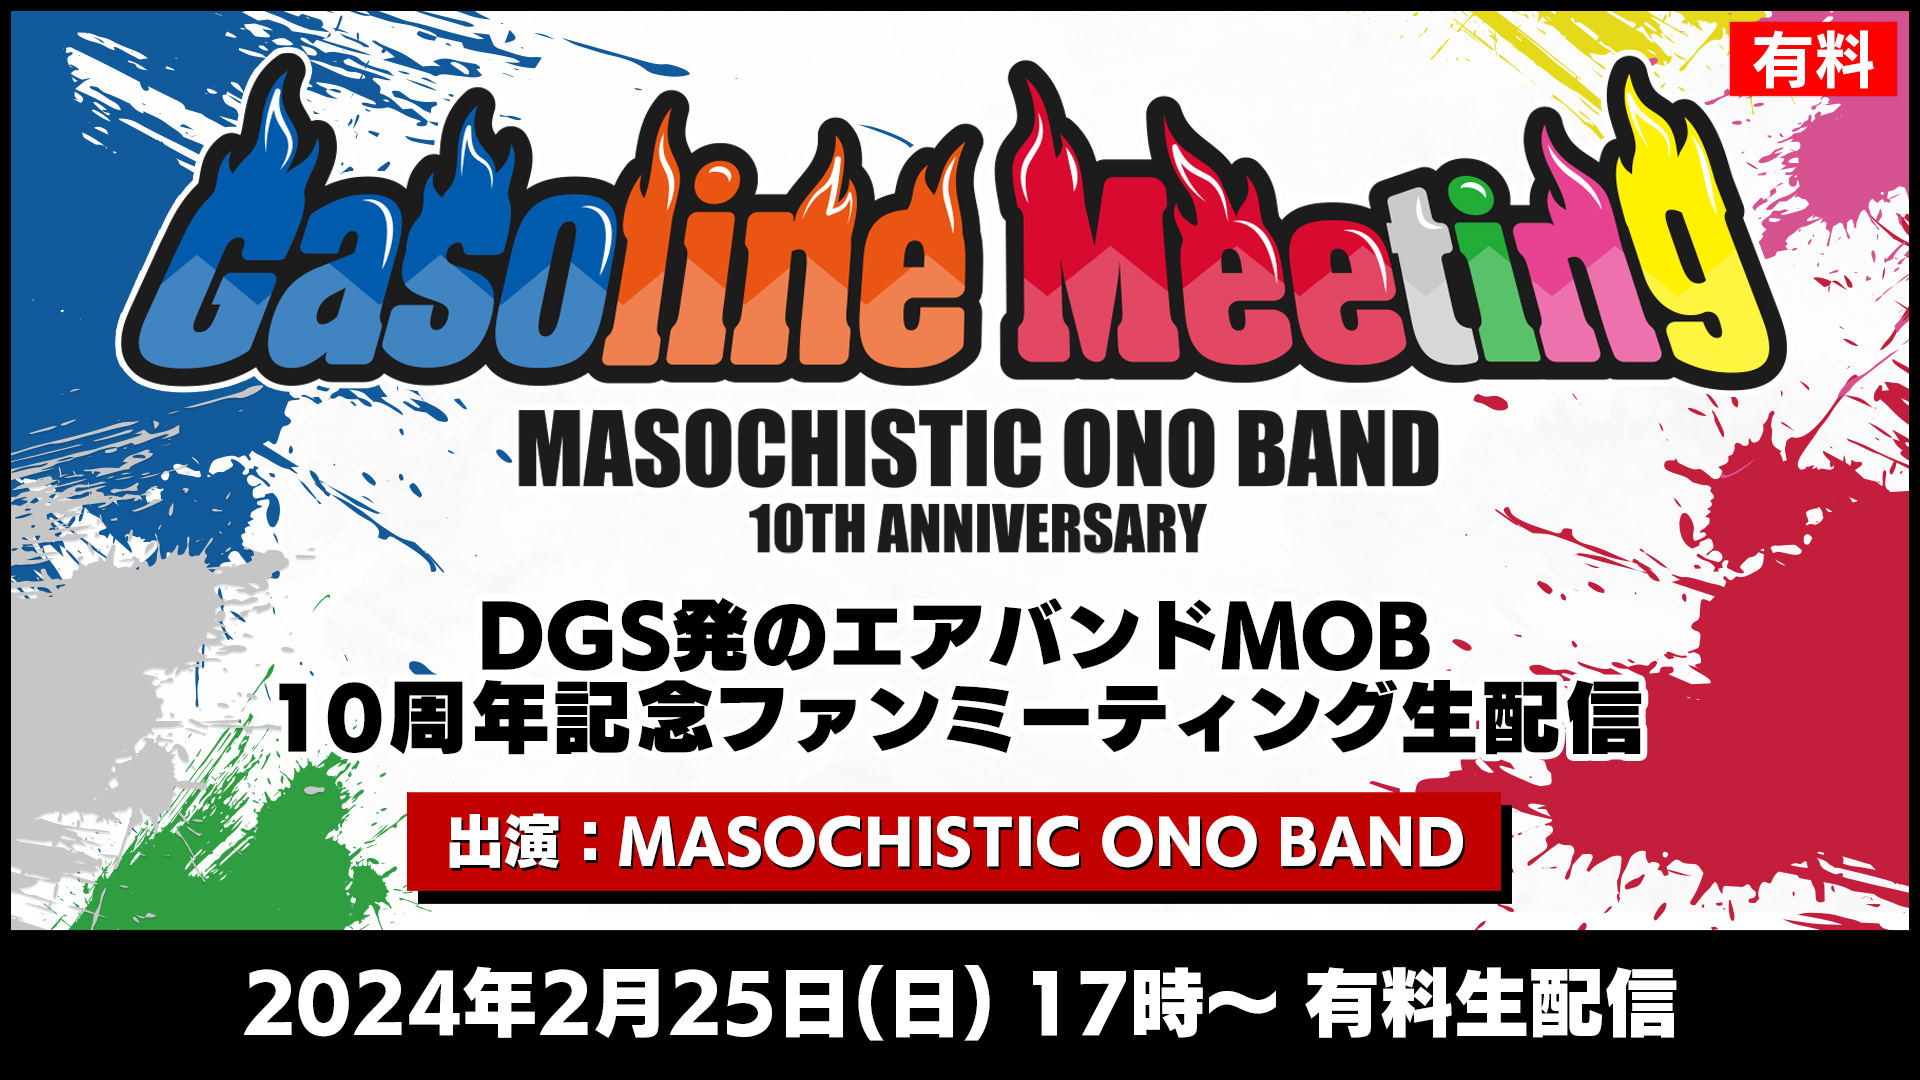 【有料】MASOCHISTIC ONO BAND 10th Anniversary Gasoline Meeting 生配信